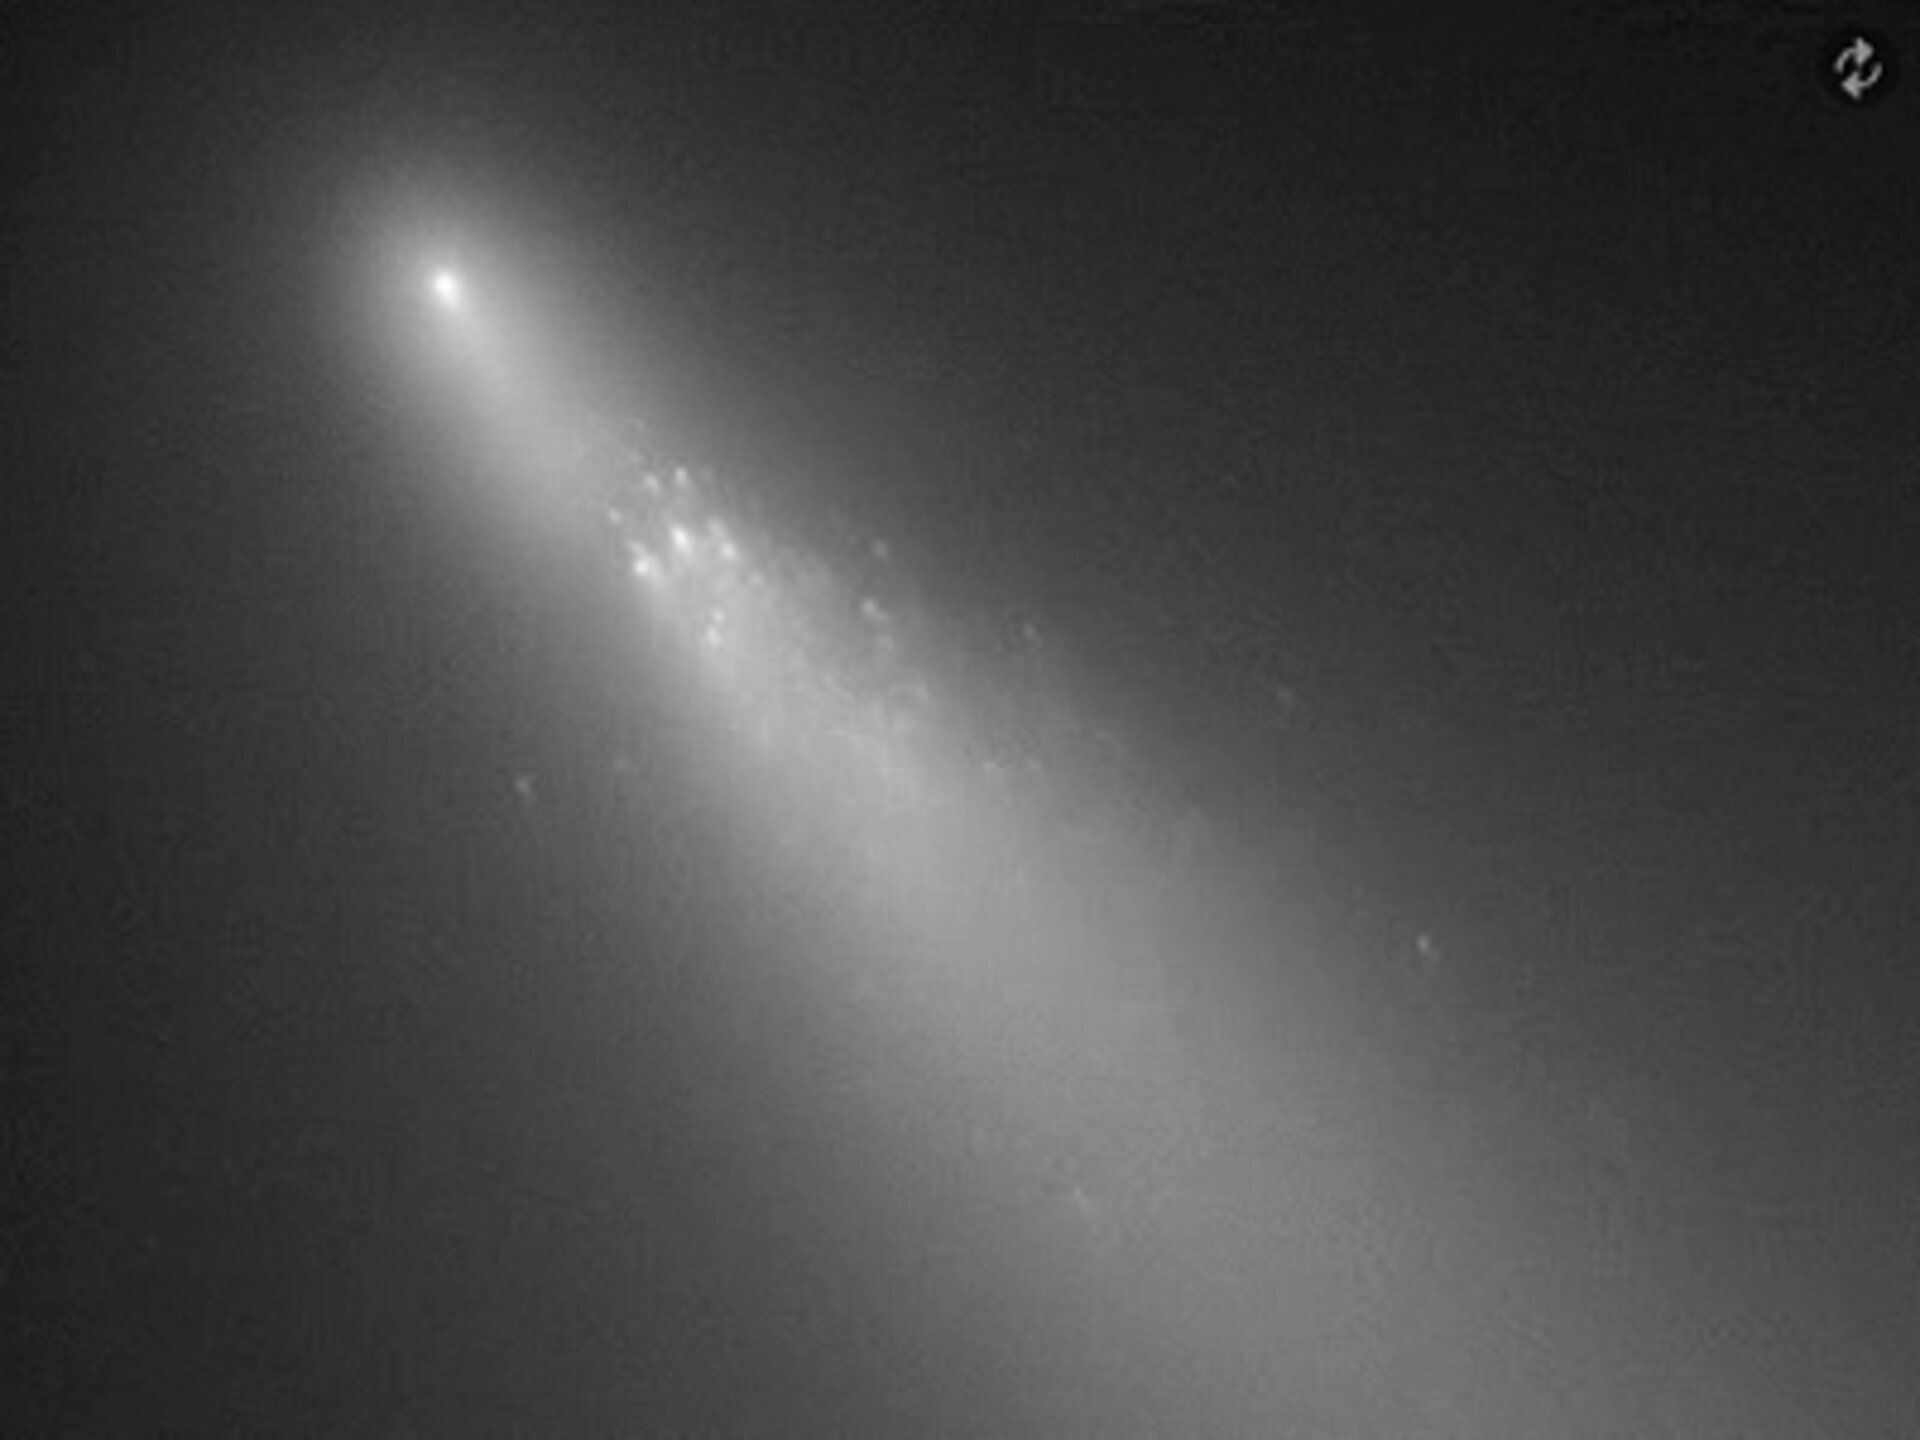 Breakup of Comet 73P/Schwassmann-Wachmann 3